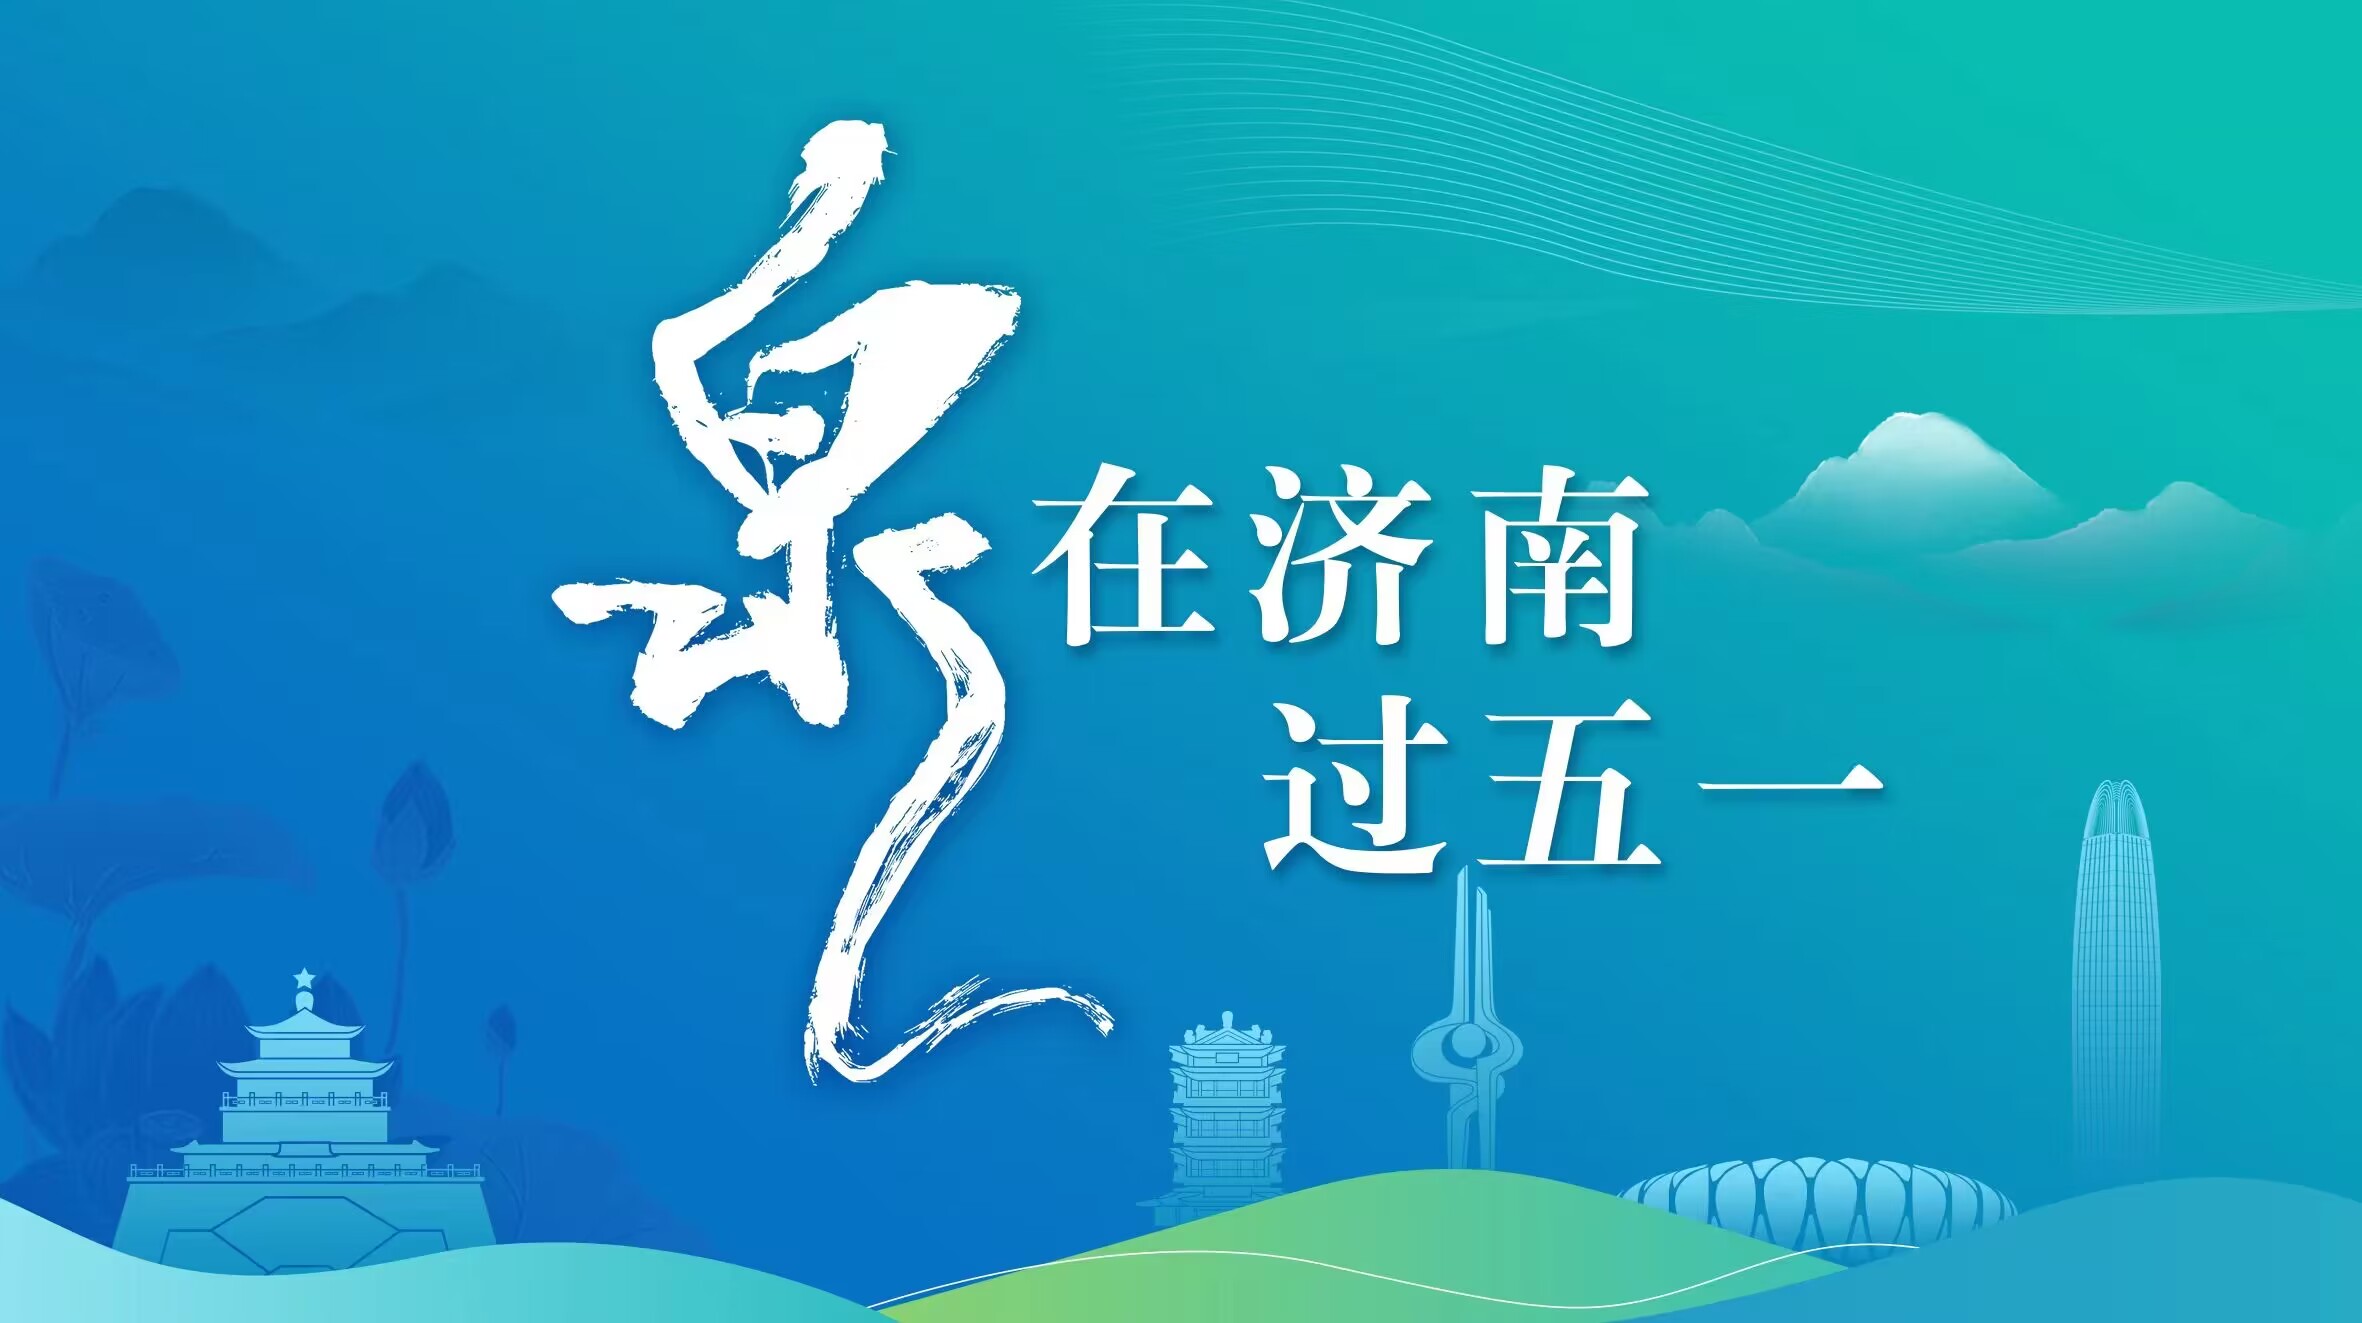 千佛山“三月三”民俗文化庙会落幕 相亲大会、对诗免费游园将持续至5月5日